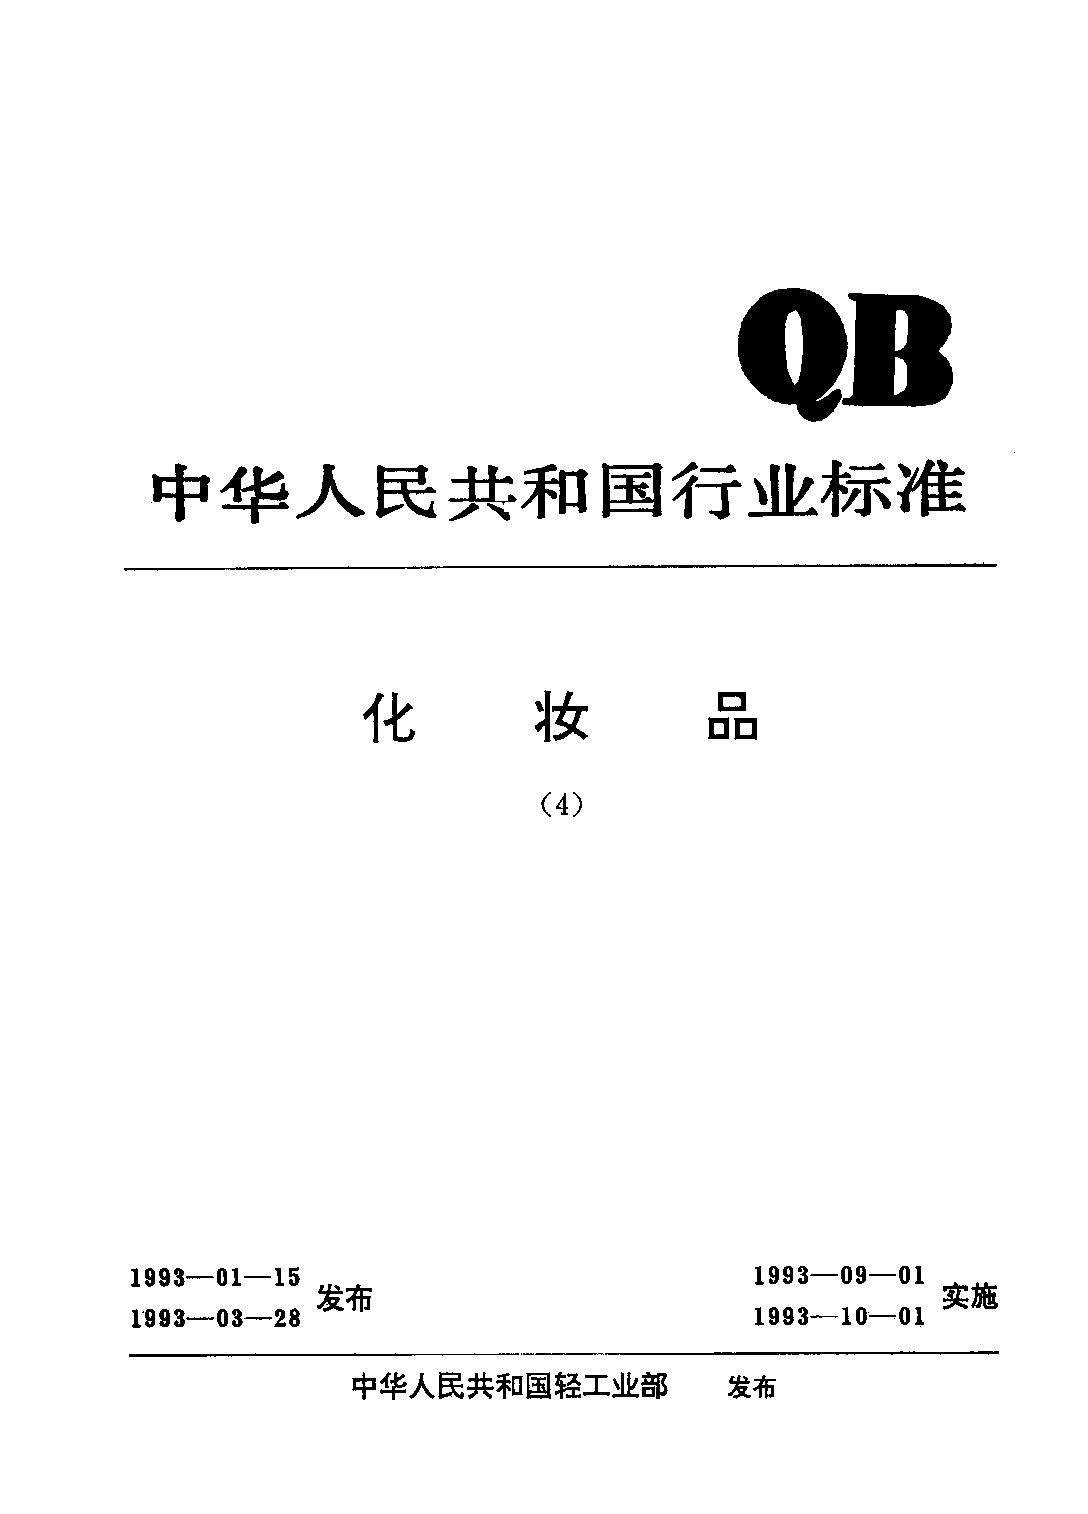 QB/T 1684-1993